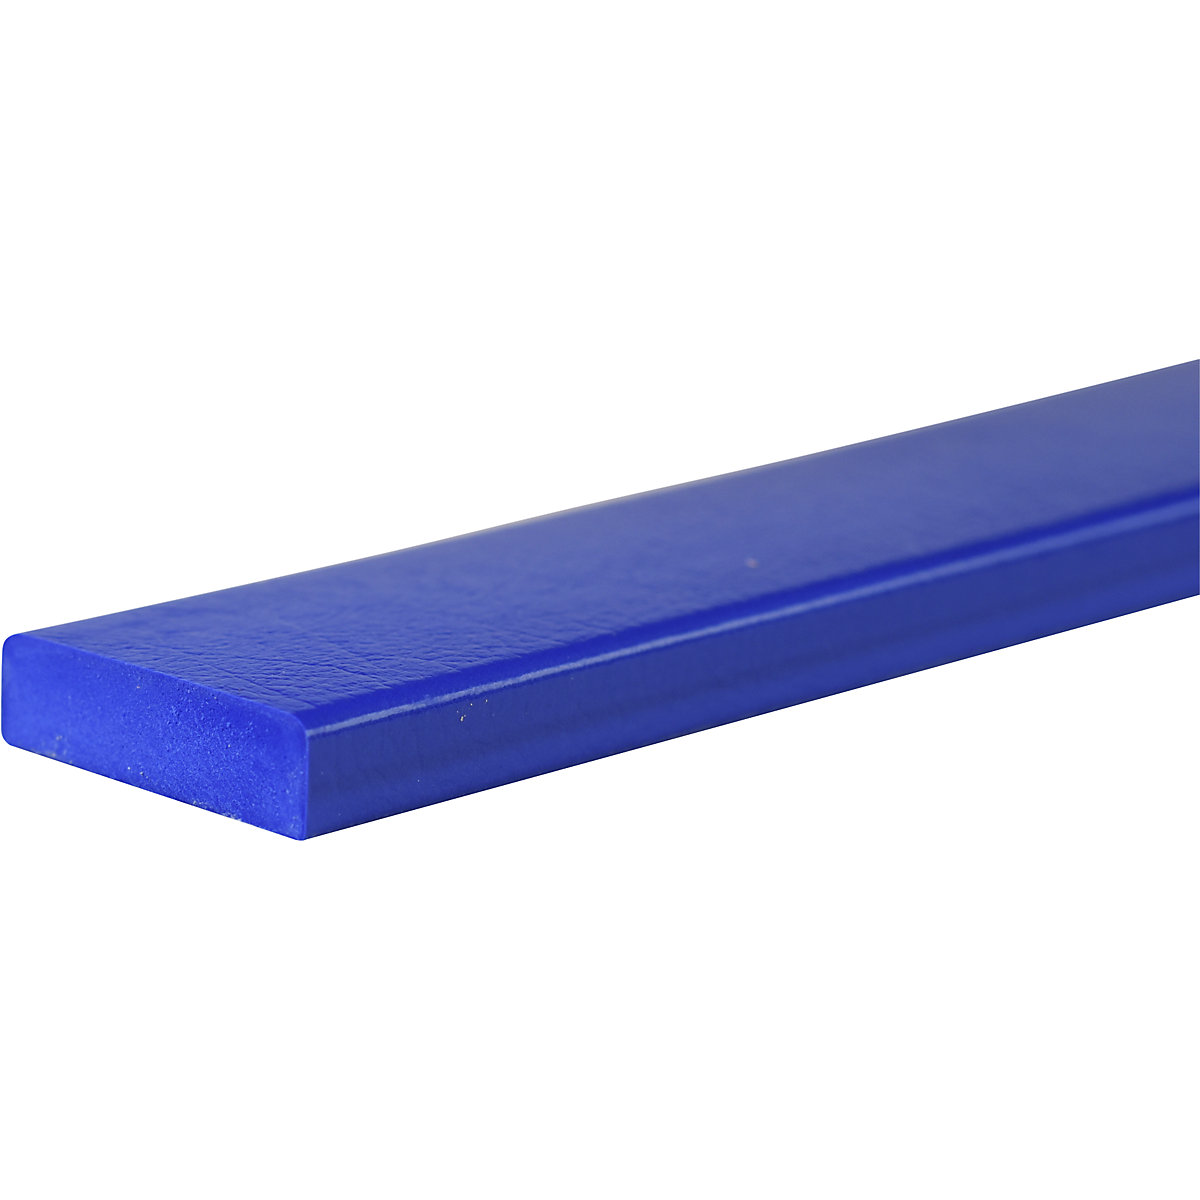 Protección de superficies Knuffi® – SHG, tipo S, pieza de 1 m, azul-21